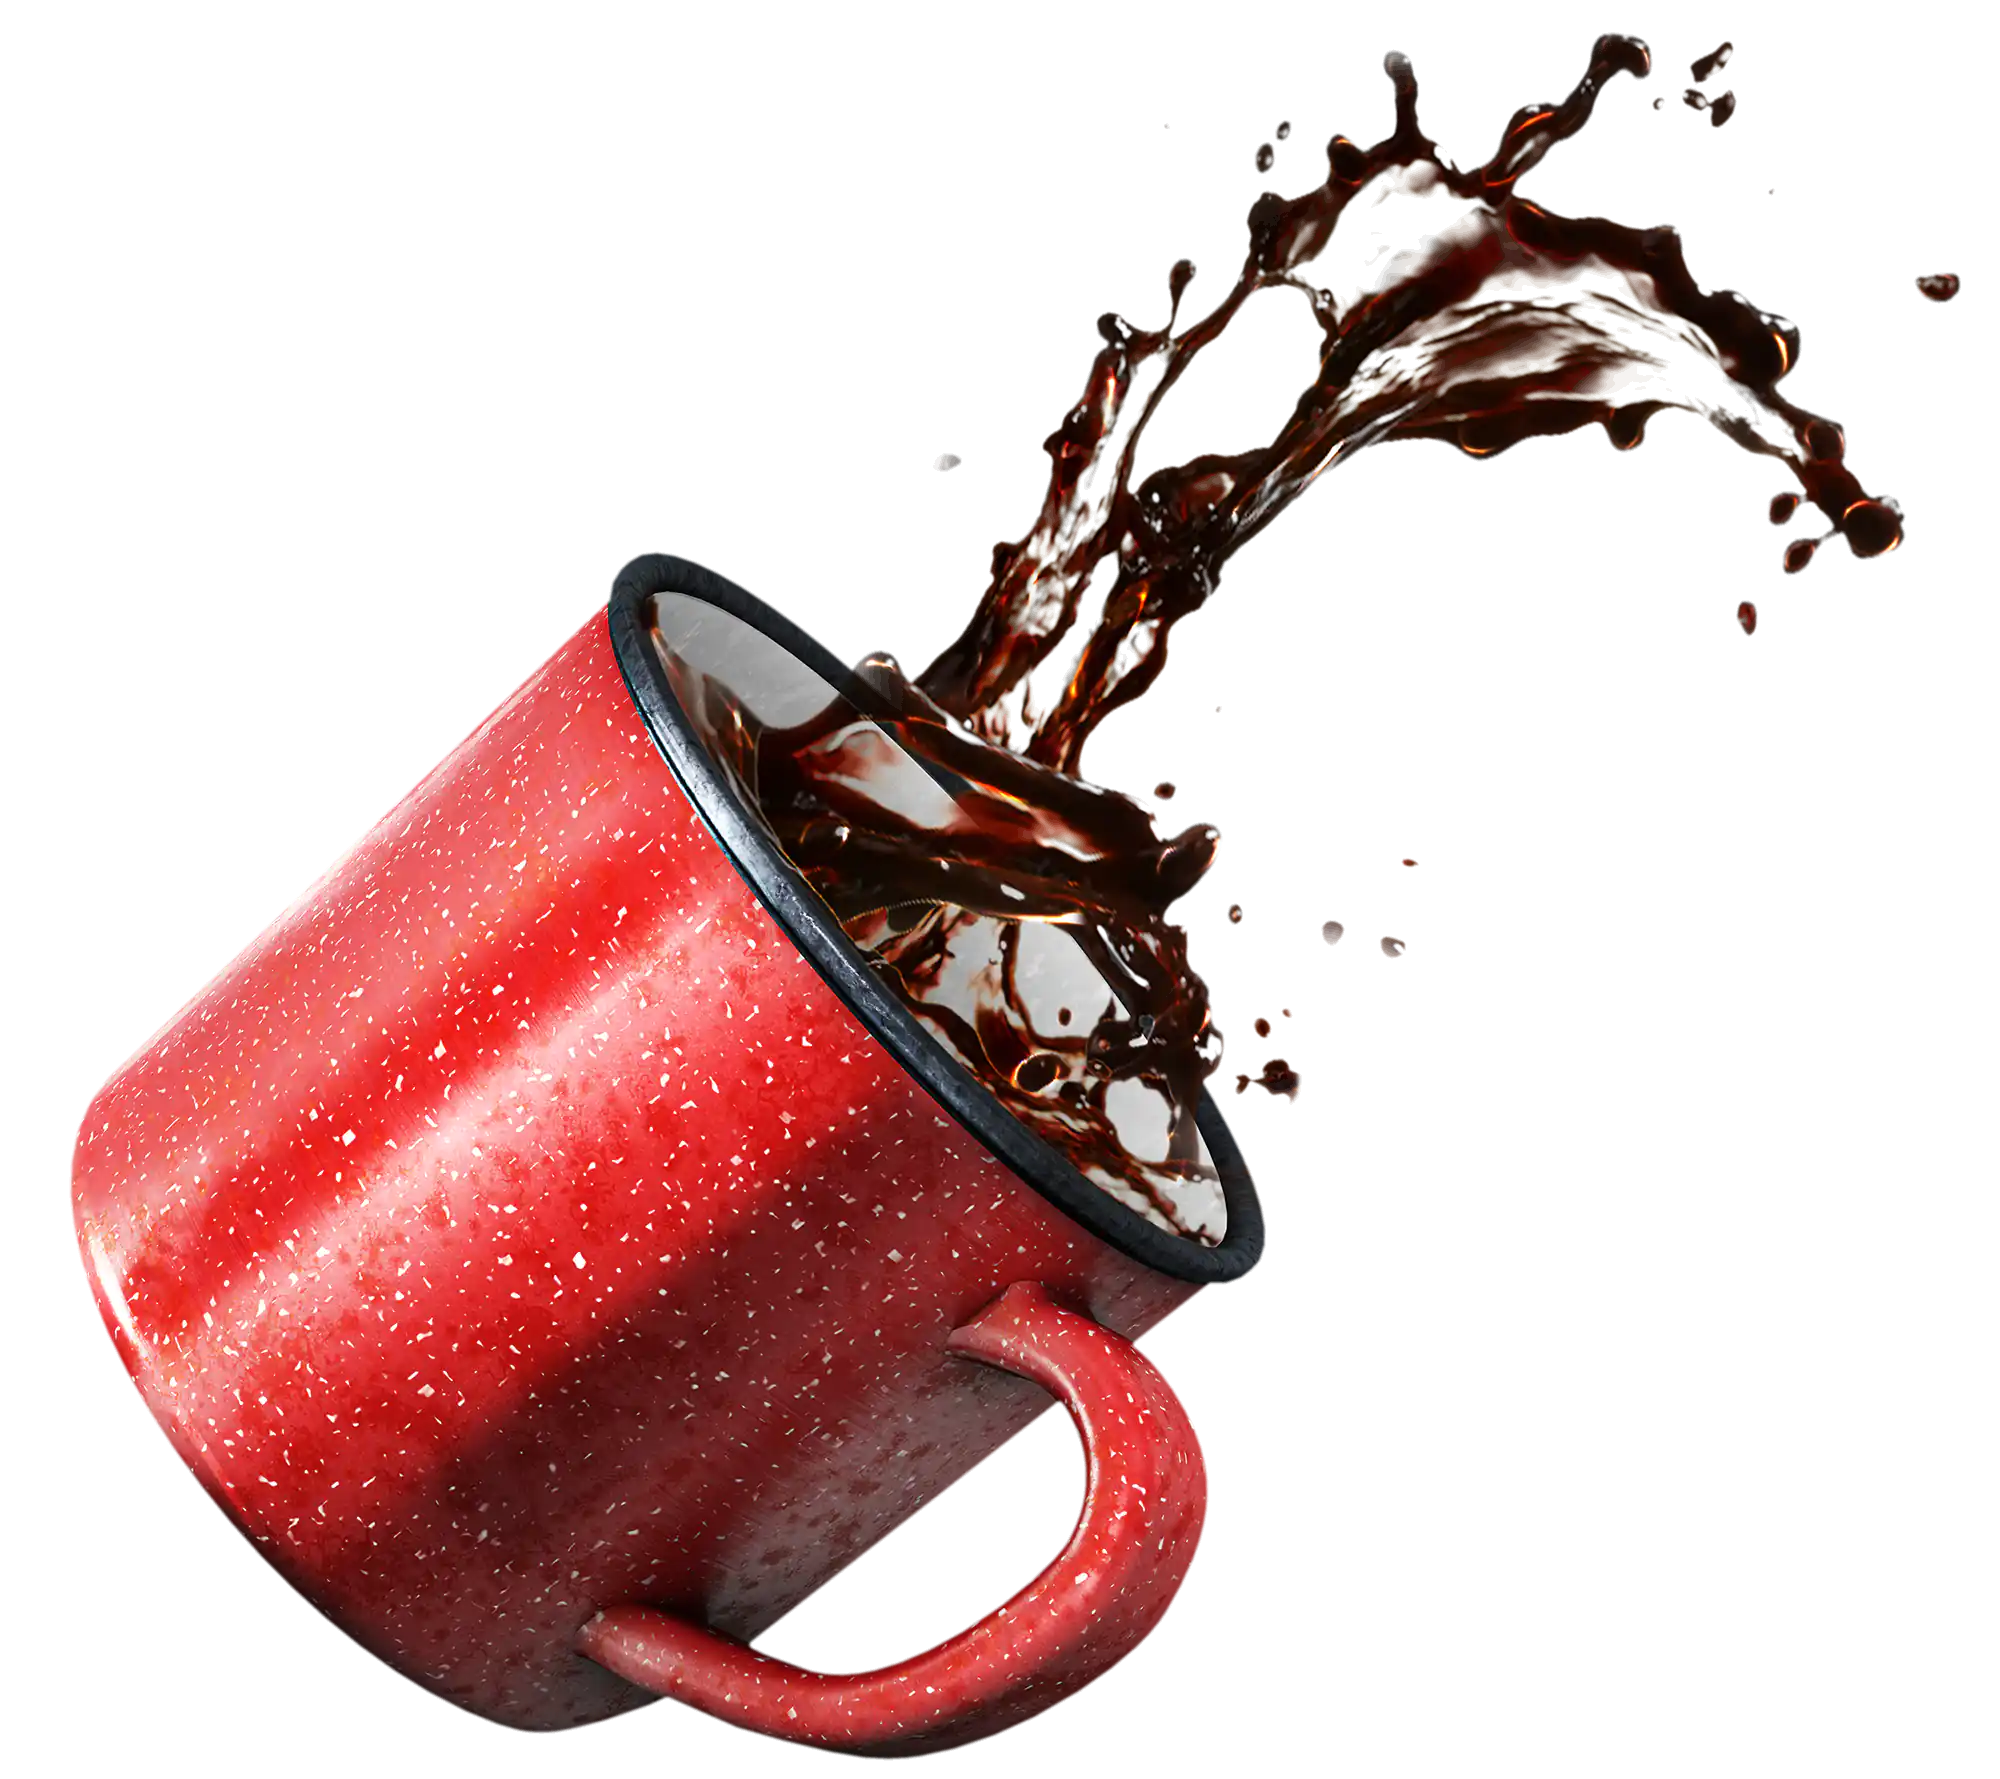 3D-Rendering einer roten Tasse mit Kaffe, der durch die Gegend schwappt